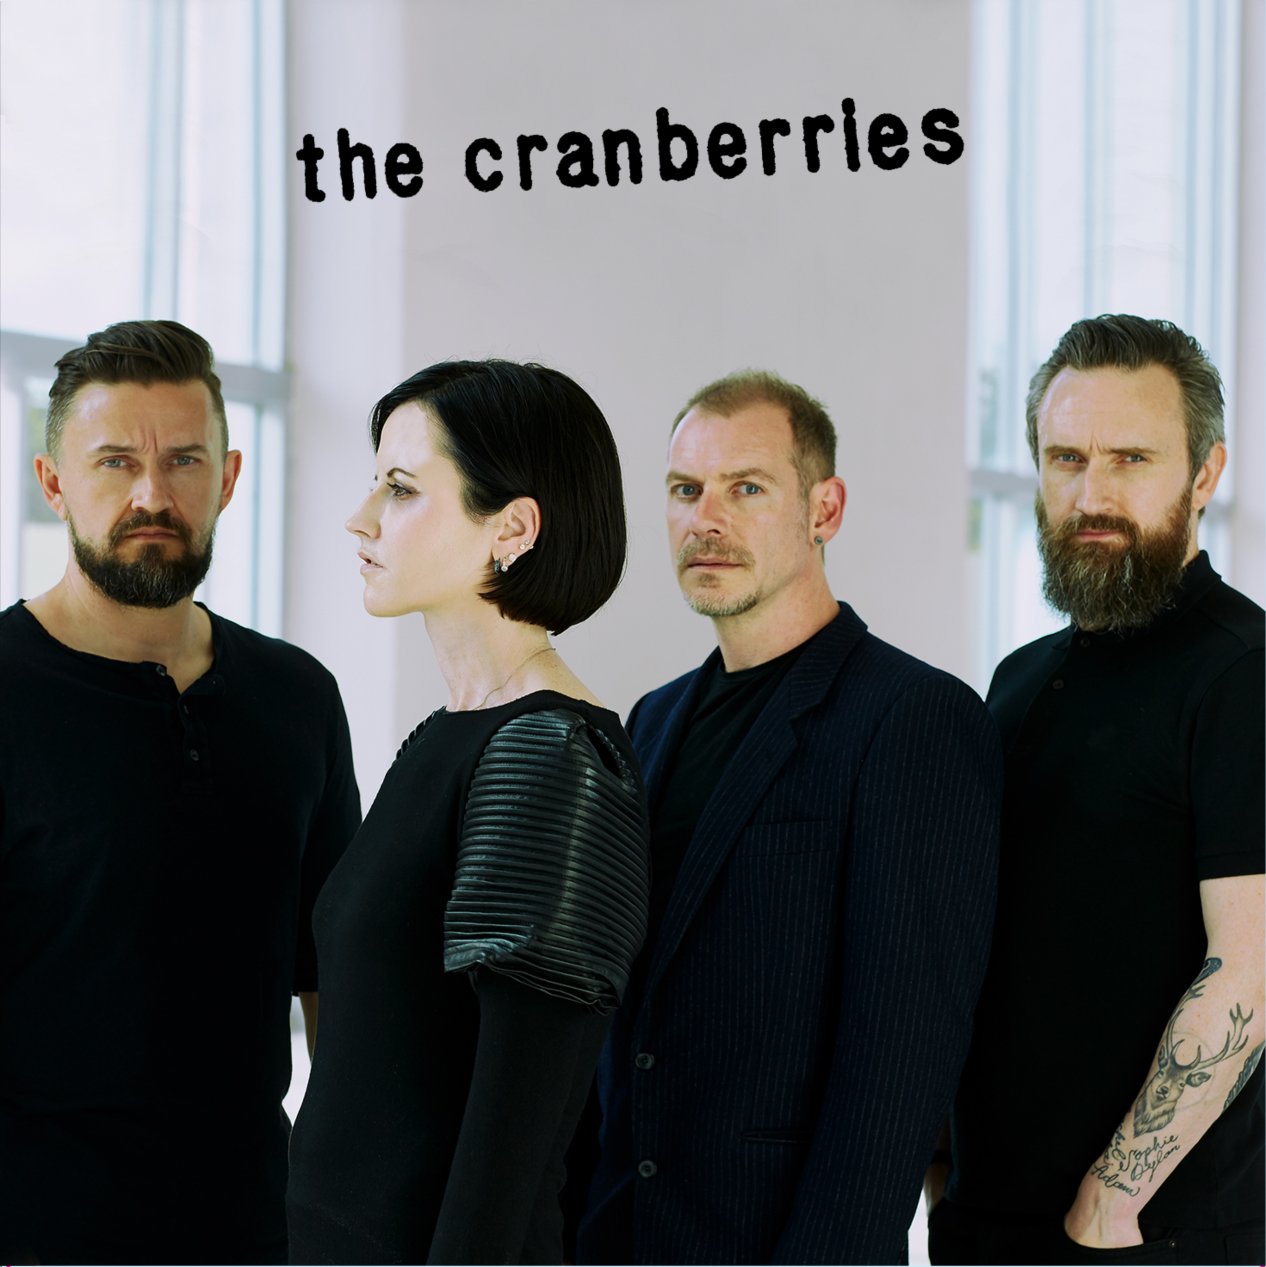 Résultat de recherche d'images pour "the cranberries why"